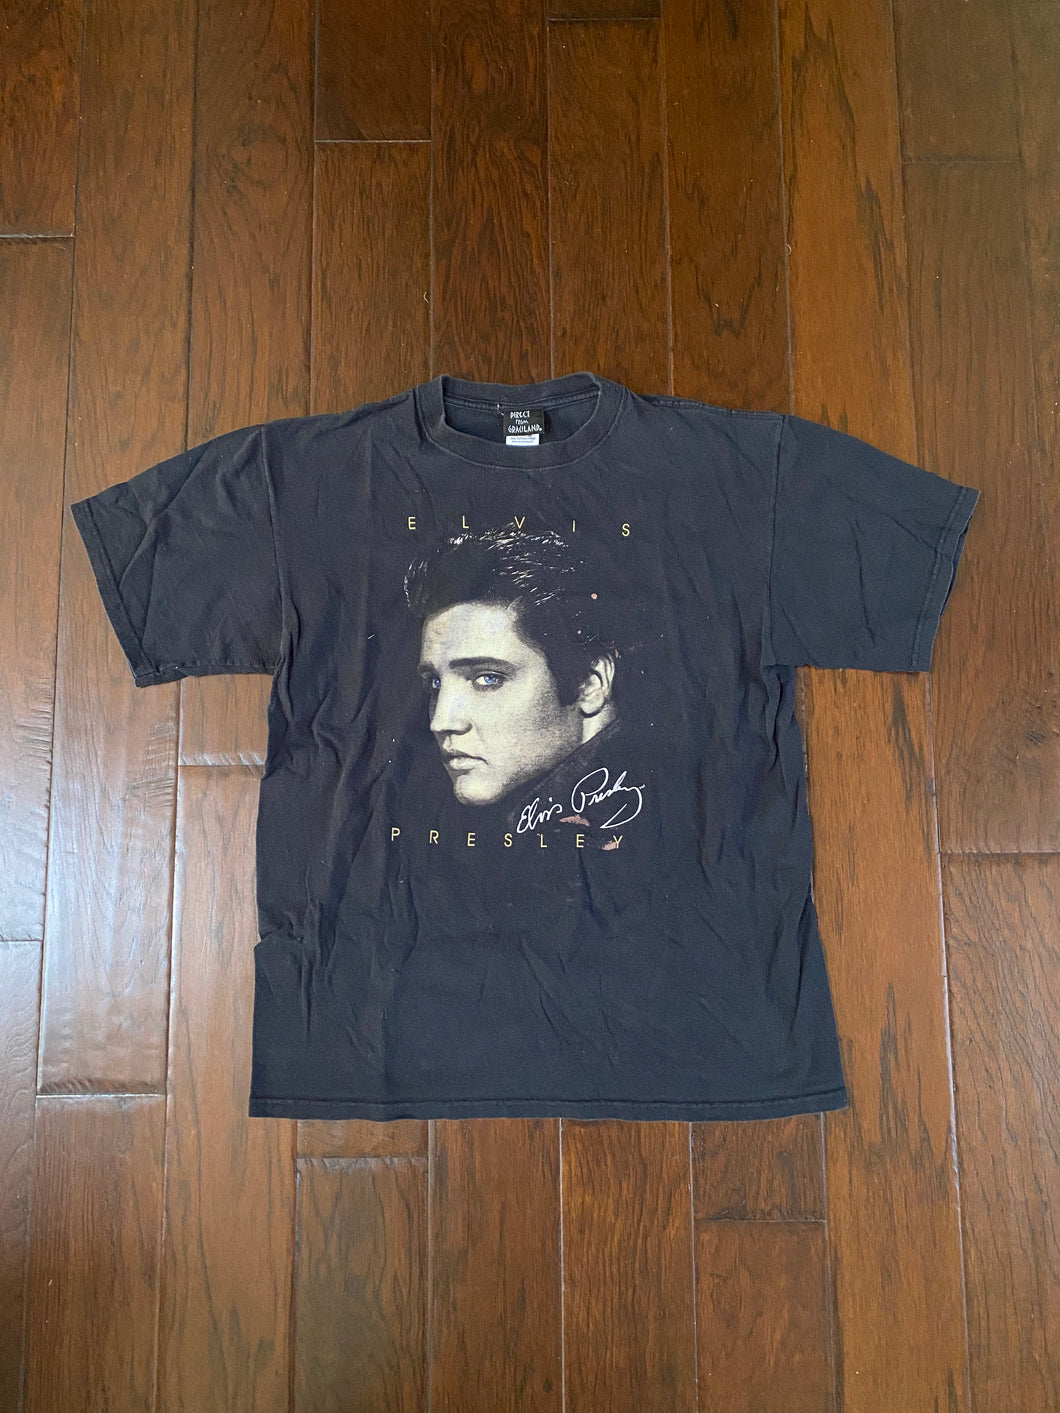 Elvis Presley 2005 Graceland Vintage Distressed T-shirt